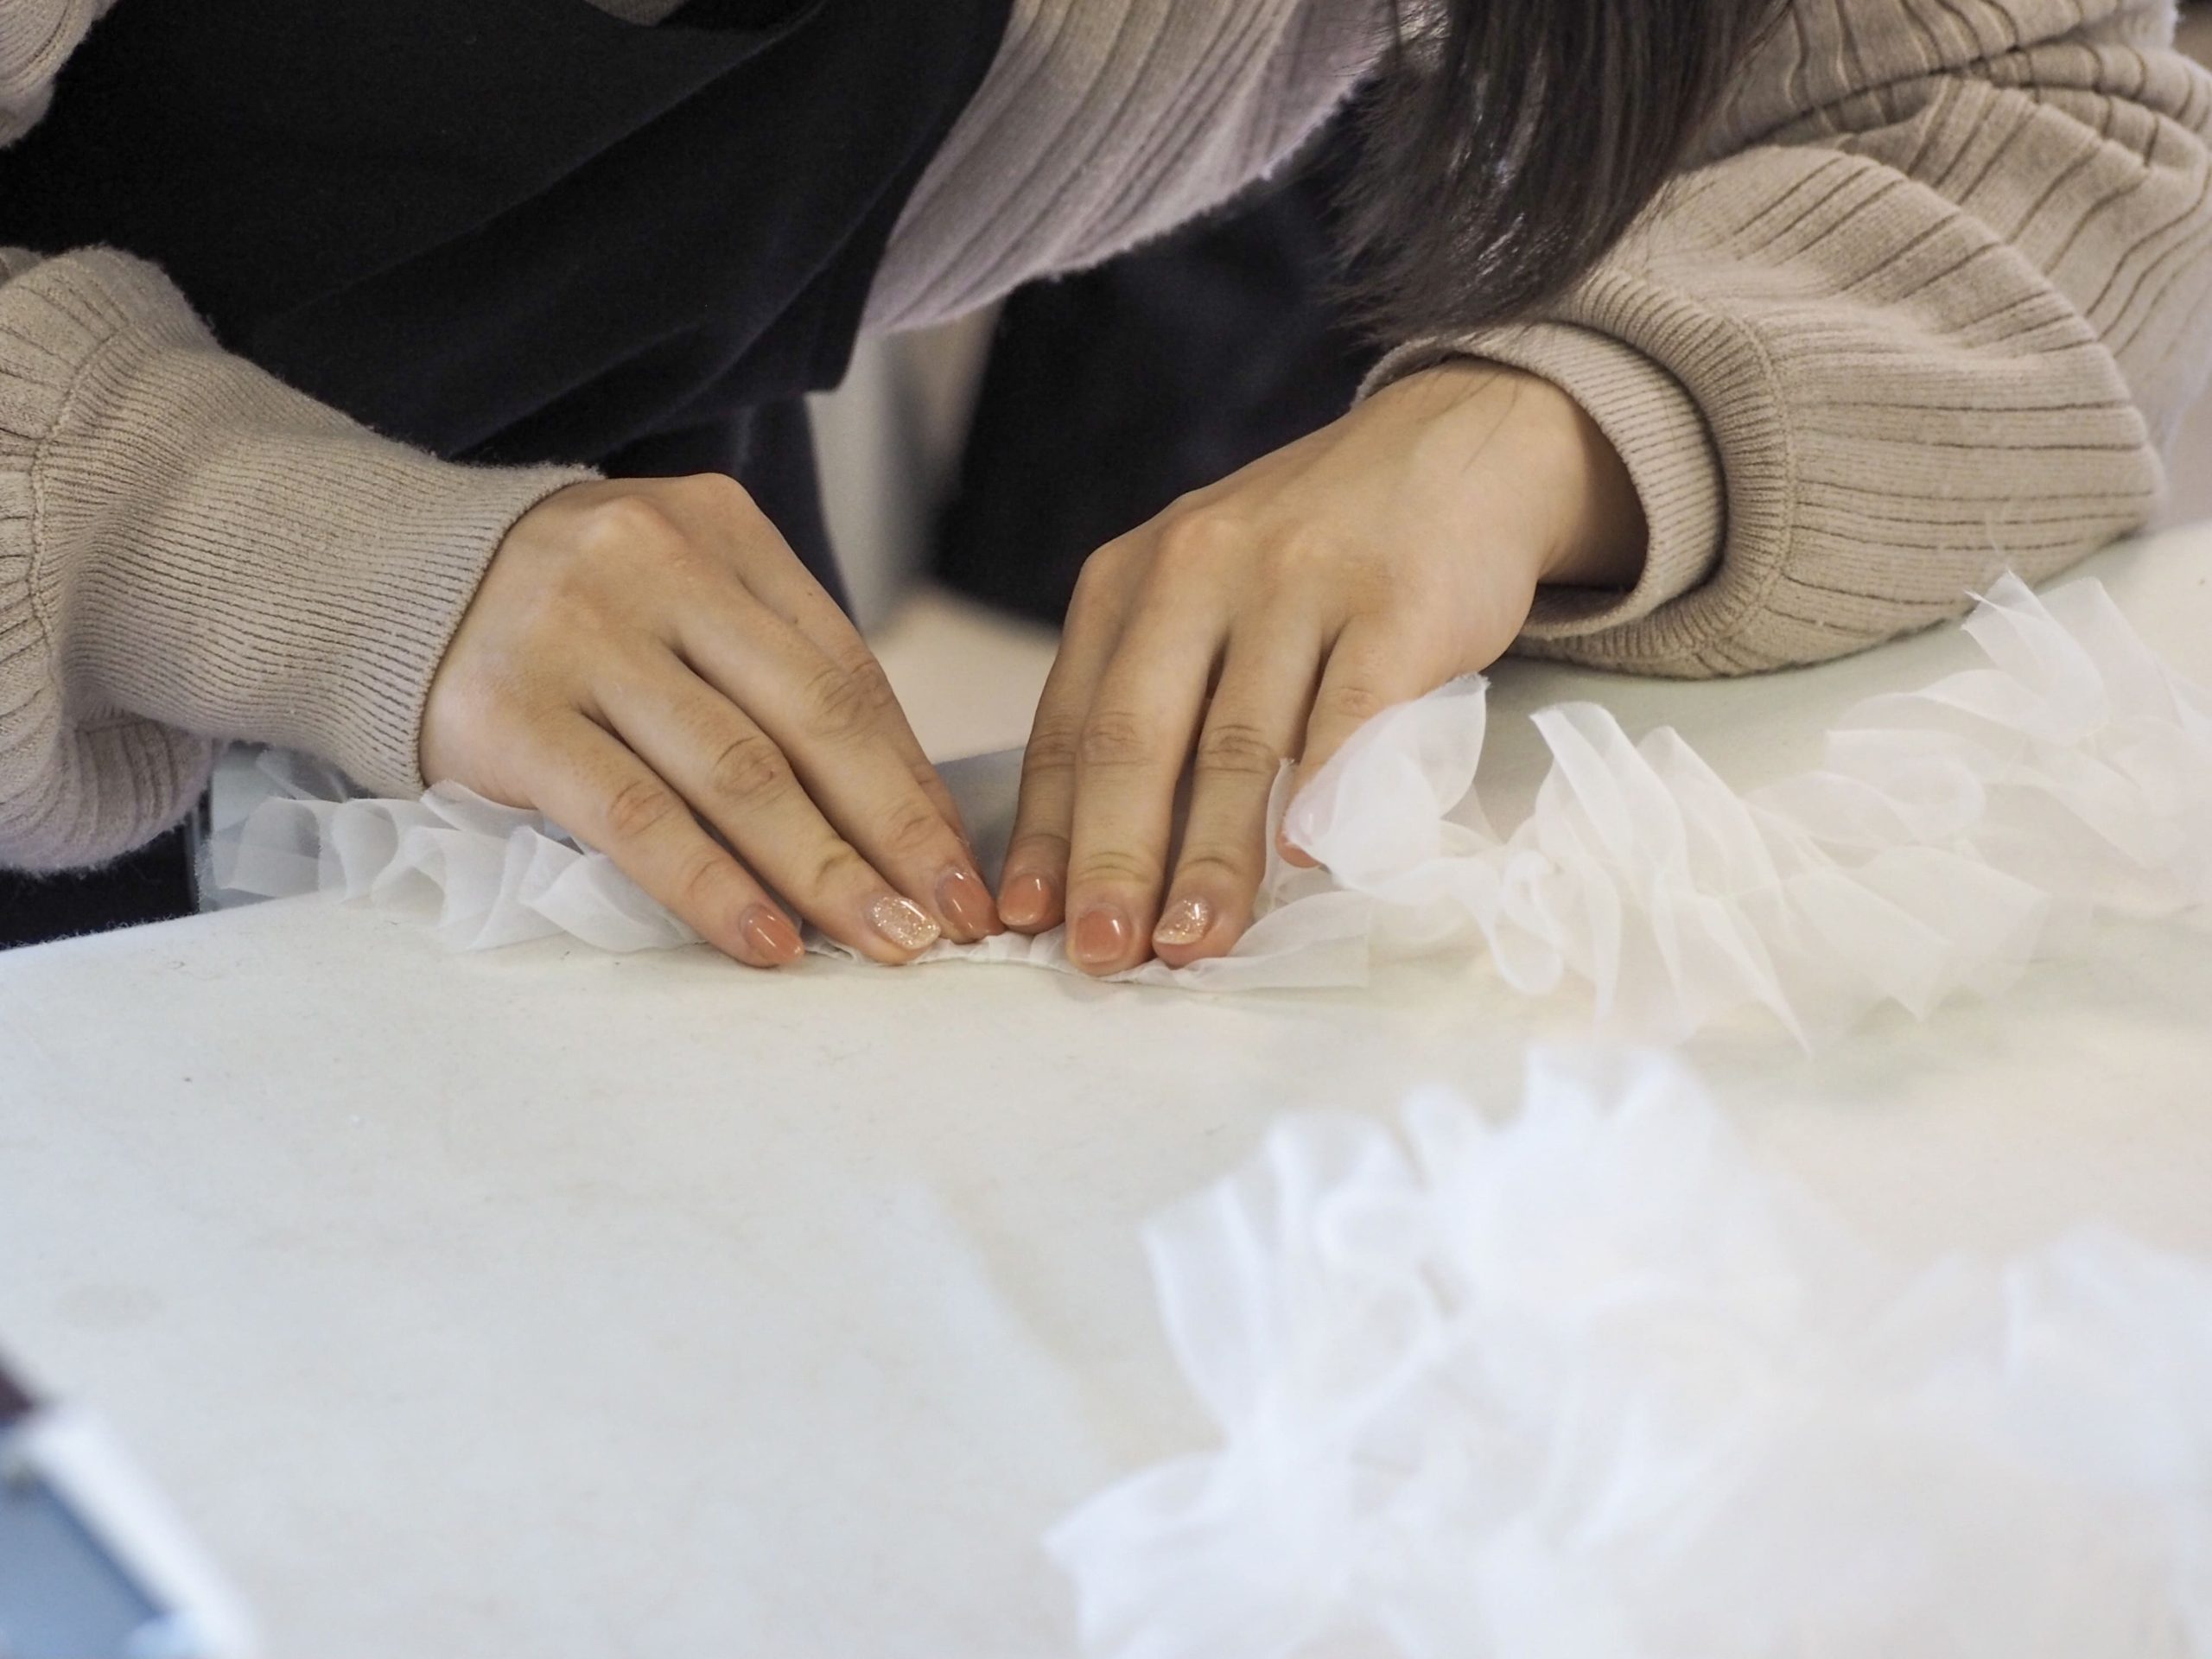 ウェディングドレスのセレクトショップ、ザ・トリート・ドレッシングでは、インポートドレスのお直しやオリジナルドレスを制作する縫製専門のスタッフがいます